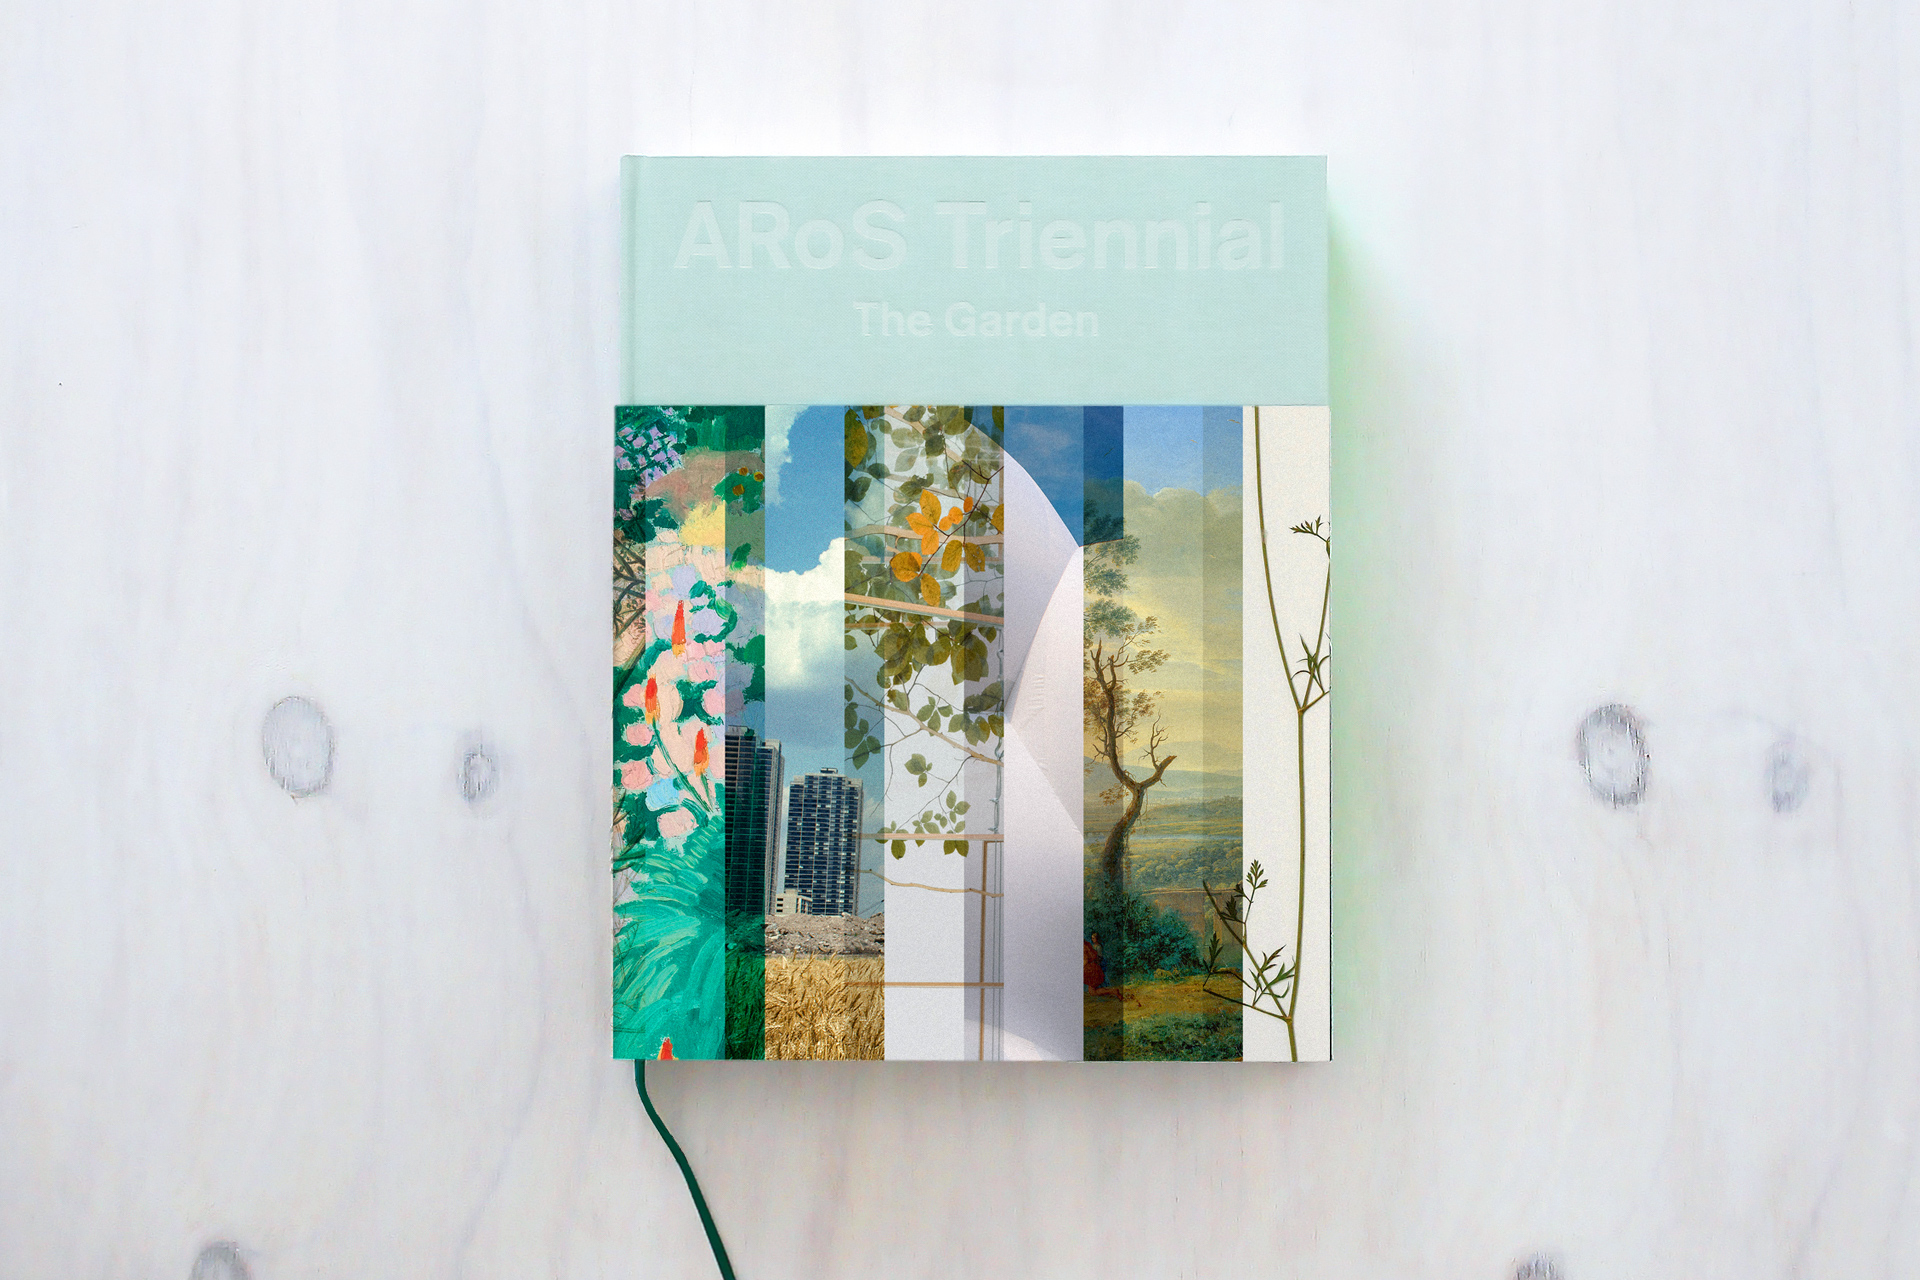 ARoS-triennial-the-garden-book-cover